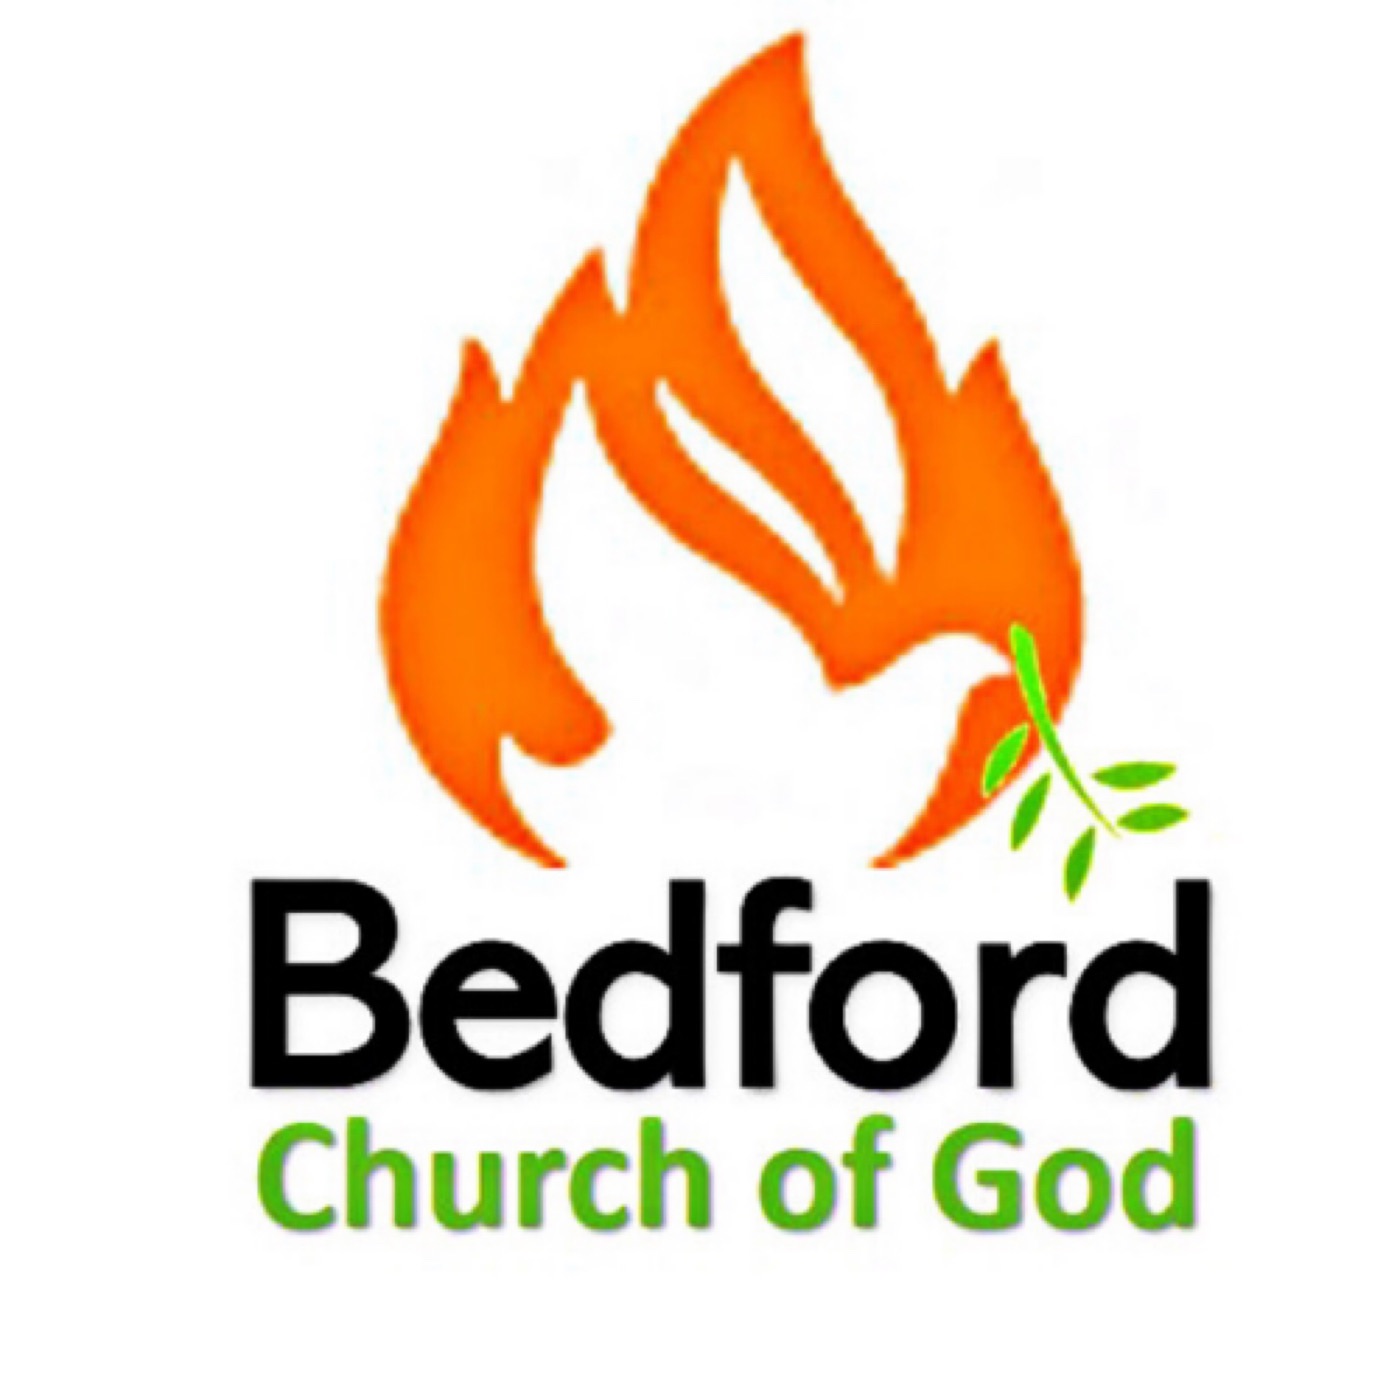 Bedford Church of God